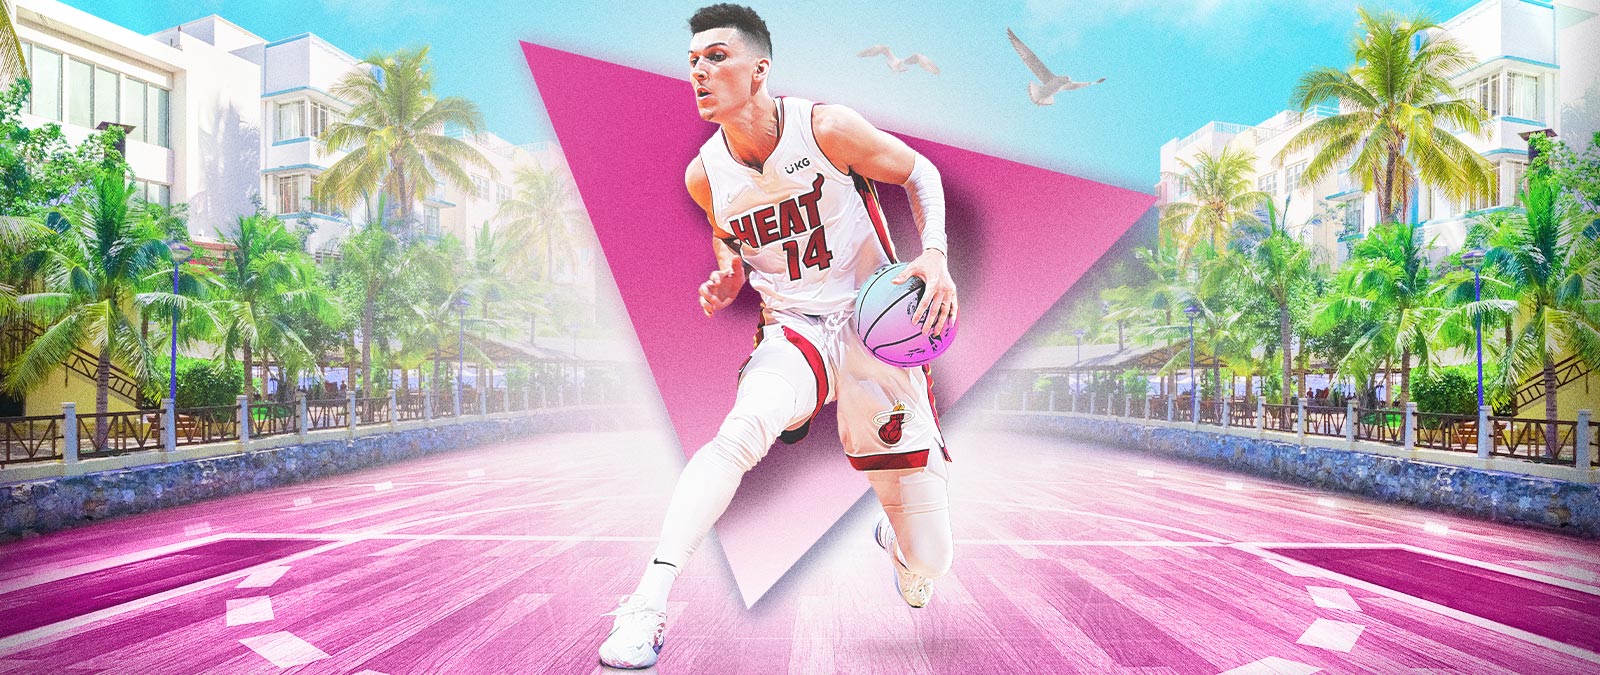 Tyler Herro avec un ballon de basket dans une rue de Miami, avec un triangle décoratif rose.